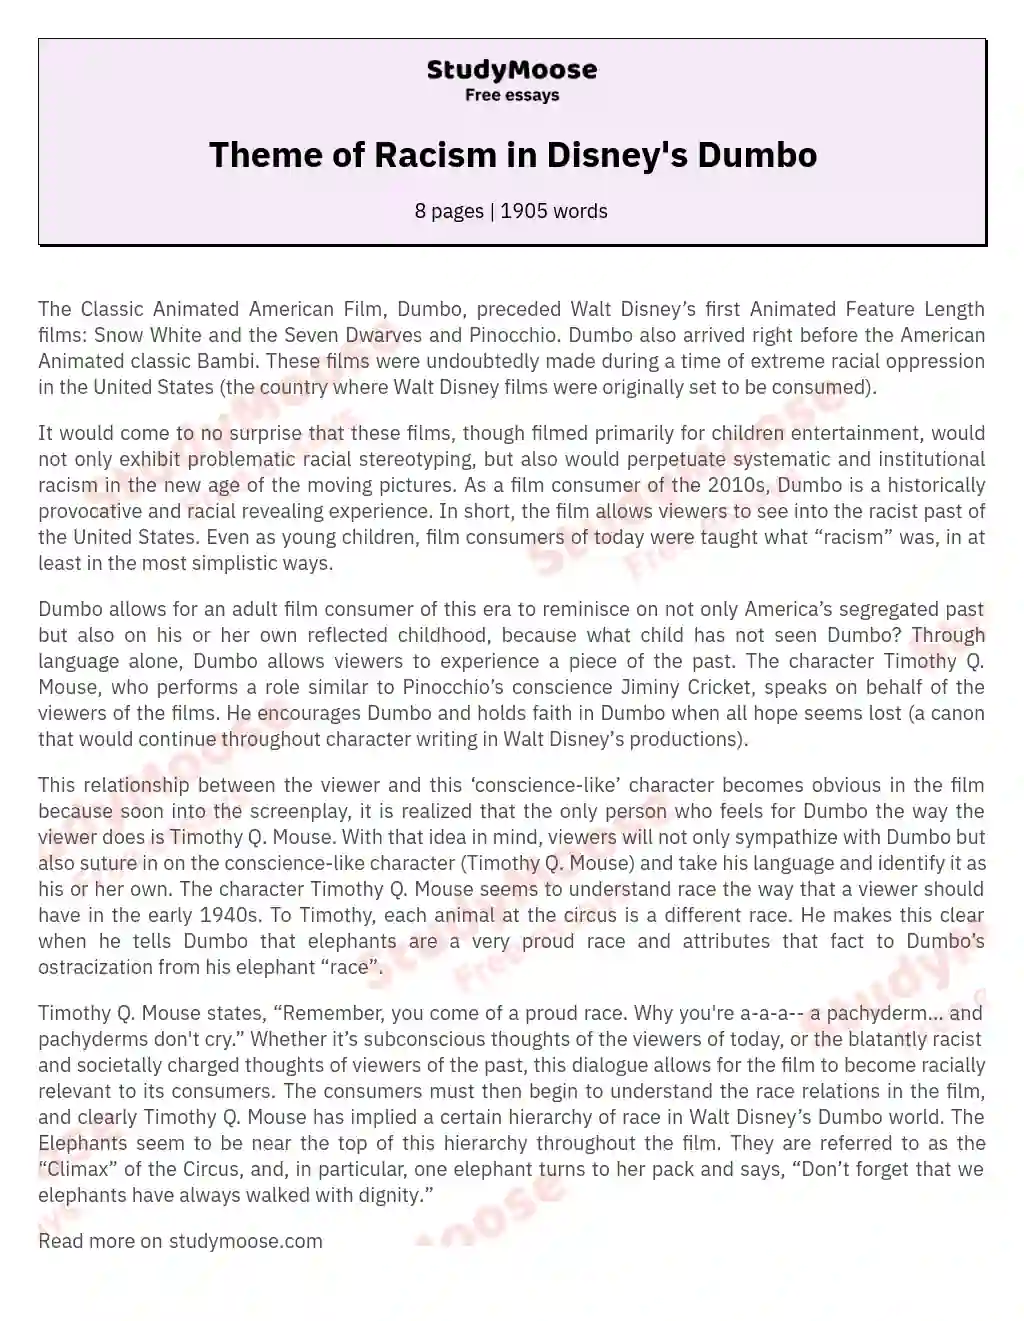 Theme of Racism in Disney's Dumbo